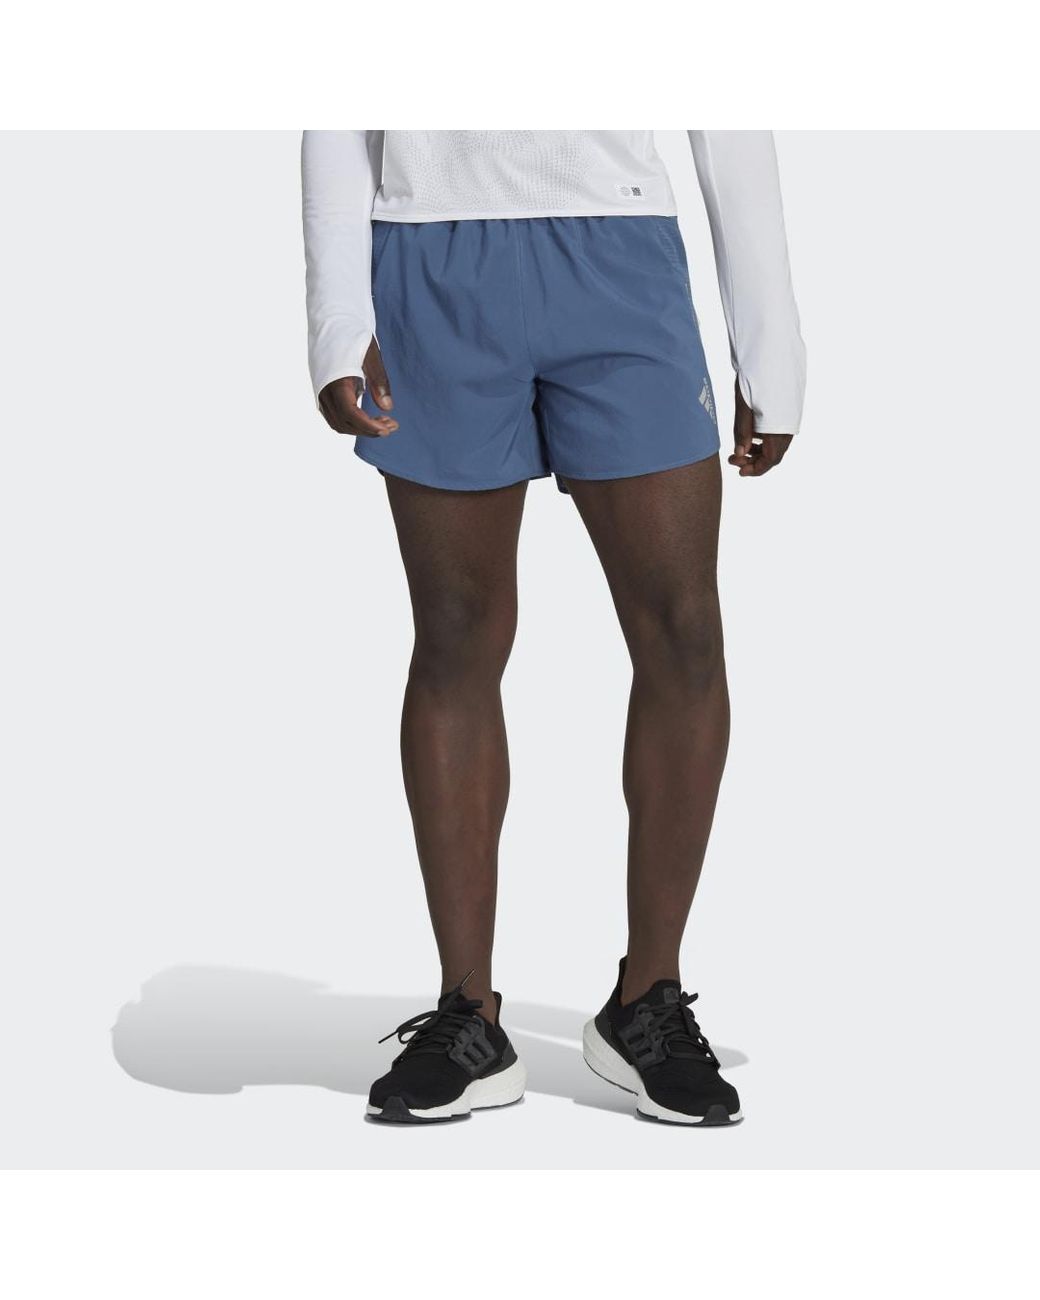 Herren Bekleidung Kurze Hosen Freizeitshorts adidas Synthetik Designed 4 Running Shorts in Blau für Herren 